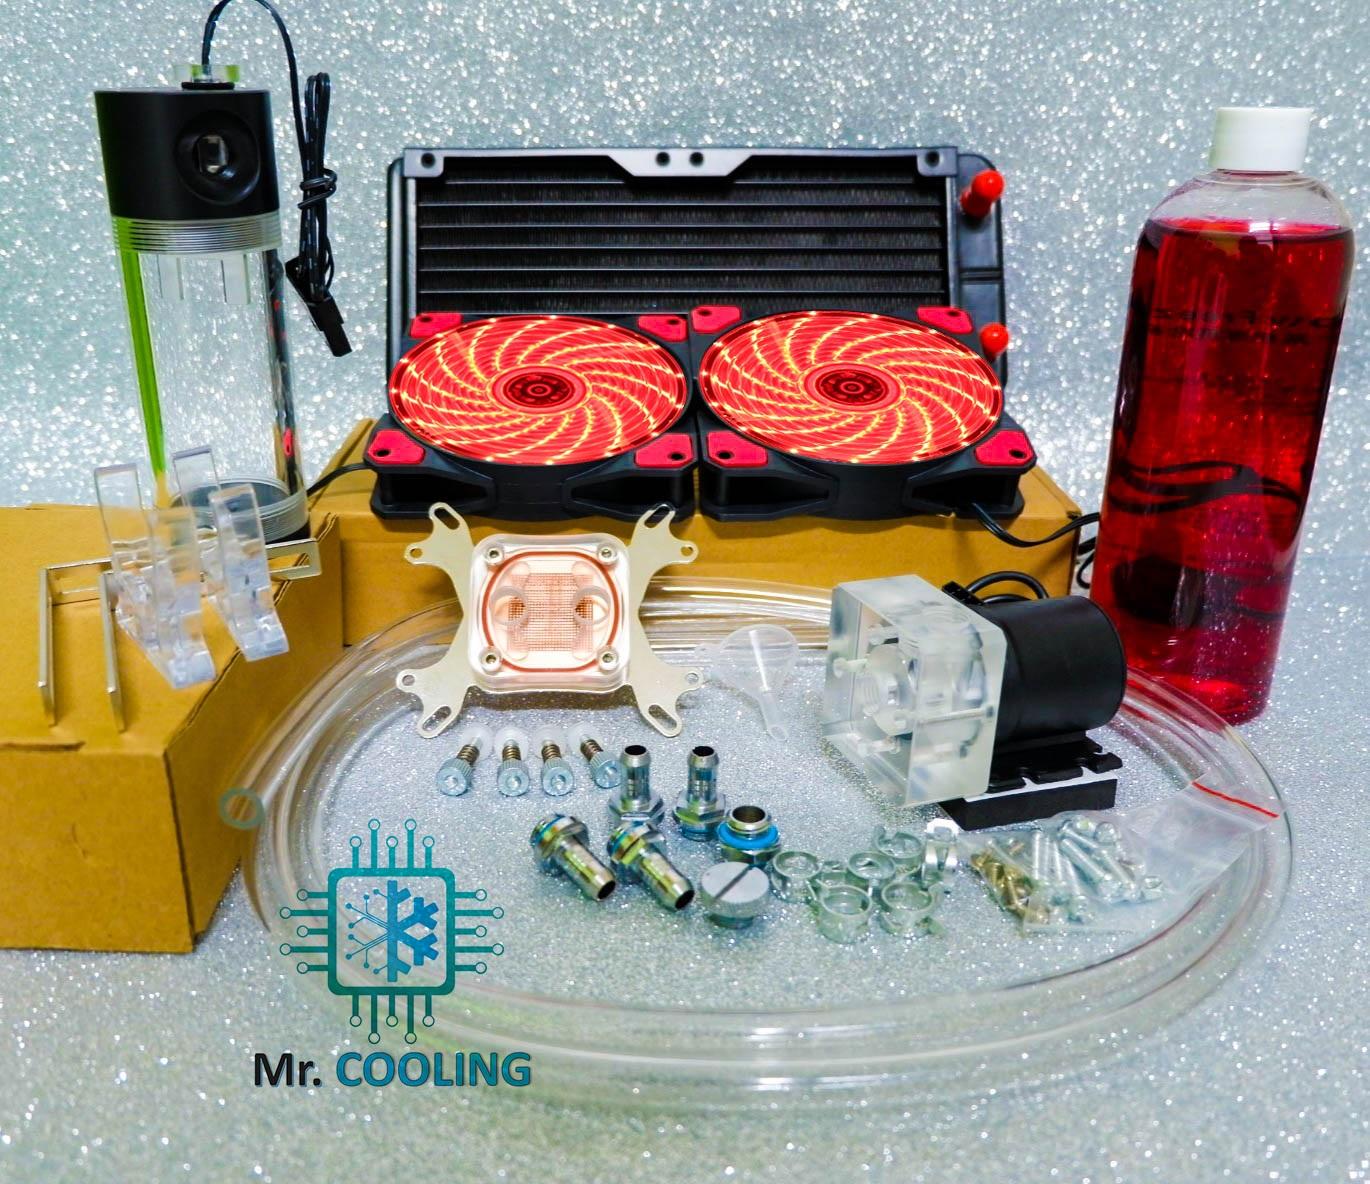 ชุดน้ำCPU ระบบเปิด 2ตอน ครบชุด/CPU Water Cooling Set *รุ่นMaster Grade (สีแดง), ชุดน้ำระบบเปิด, Comp